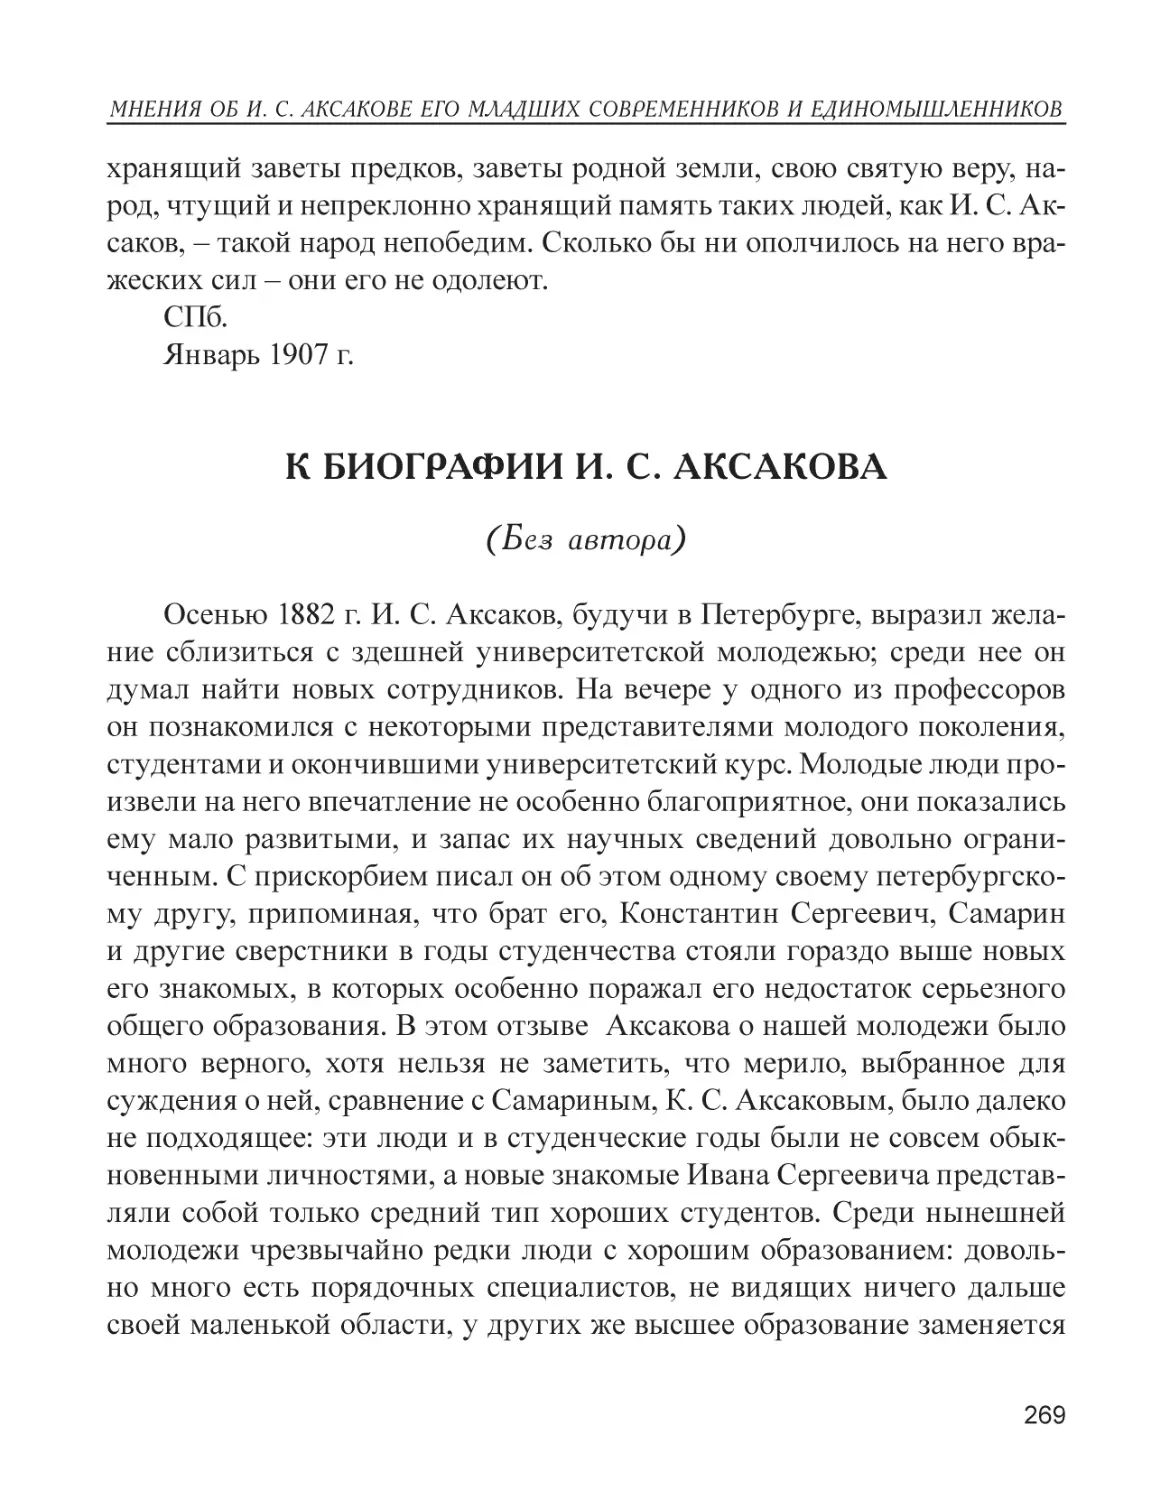 К биографии И. С. Аксакова (без автора)